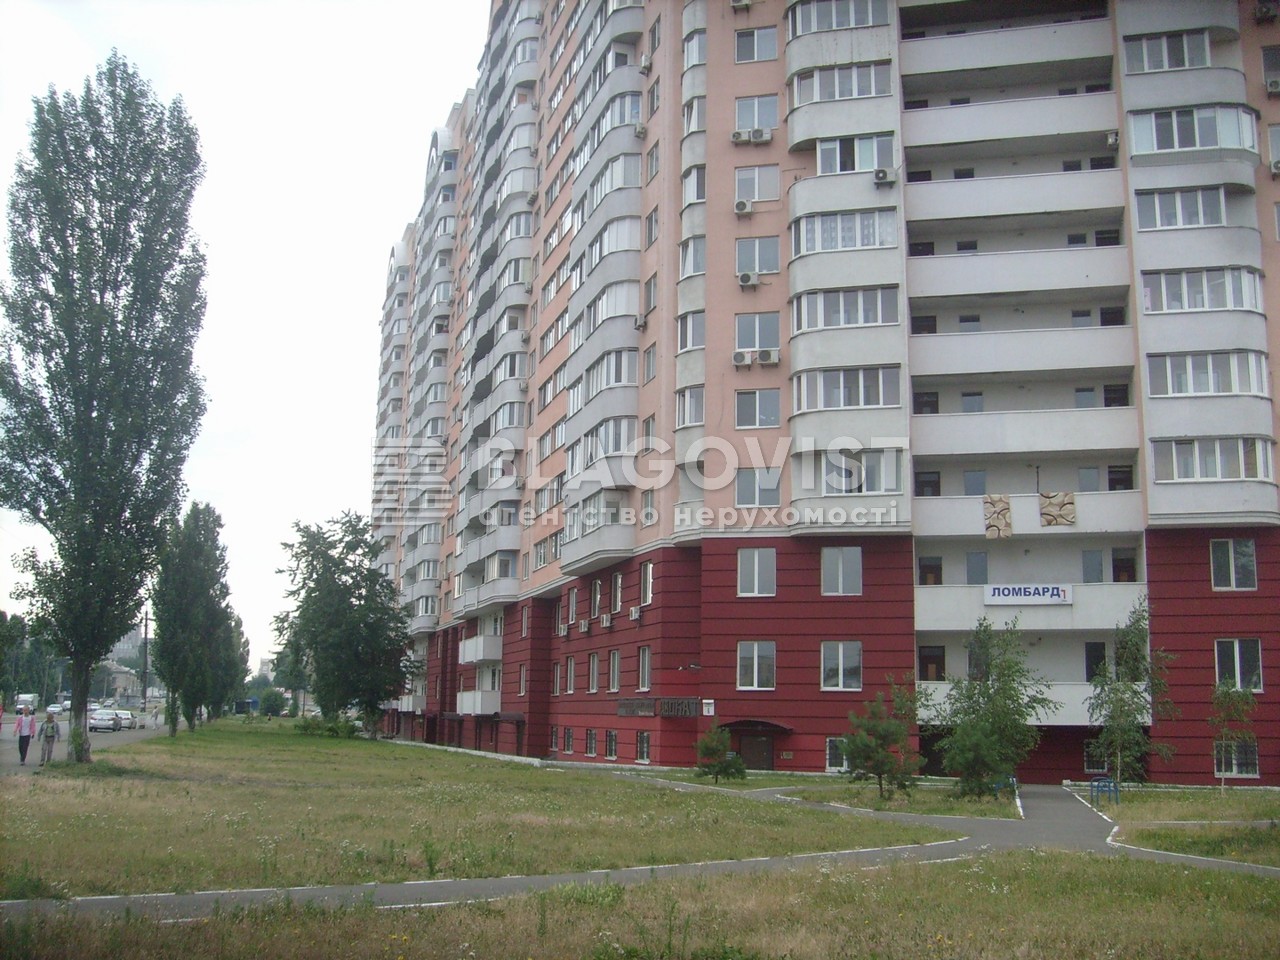 Квартира A-114351, Бориспольская, 6, Киев - Фото 3